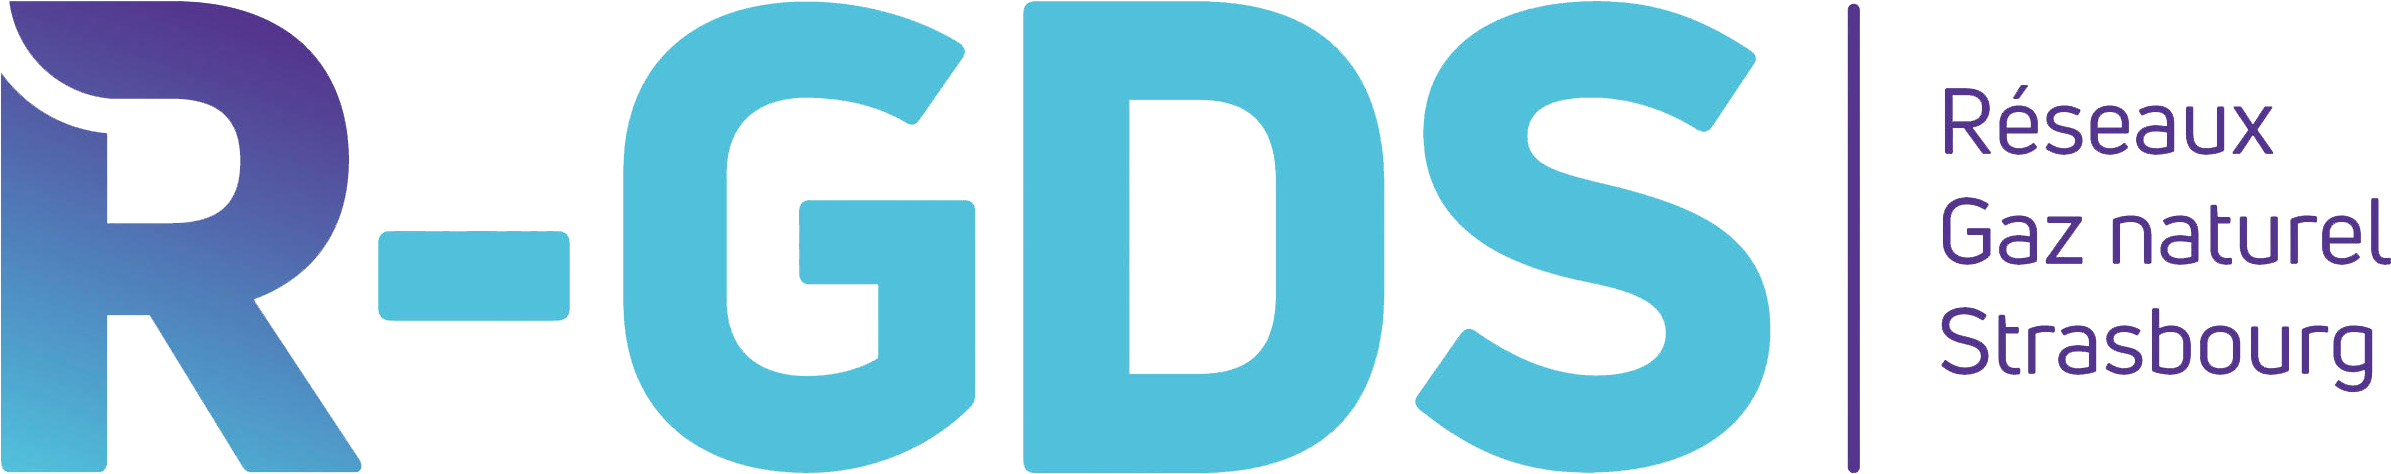 Logo R-GDS, réseaux Gaz naturel Strasbourg